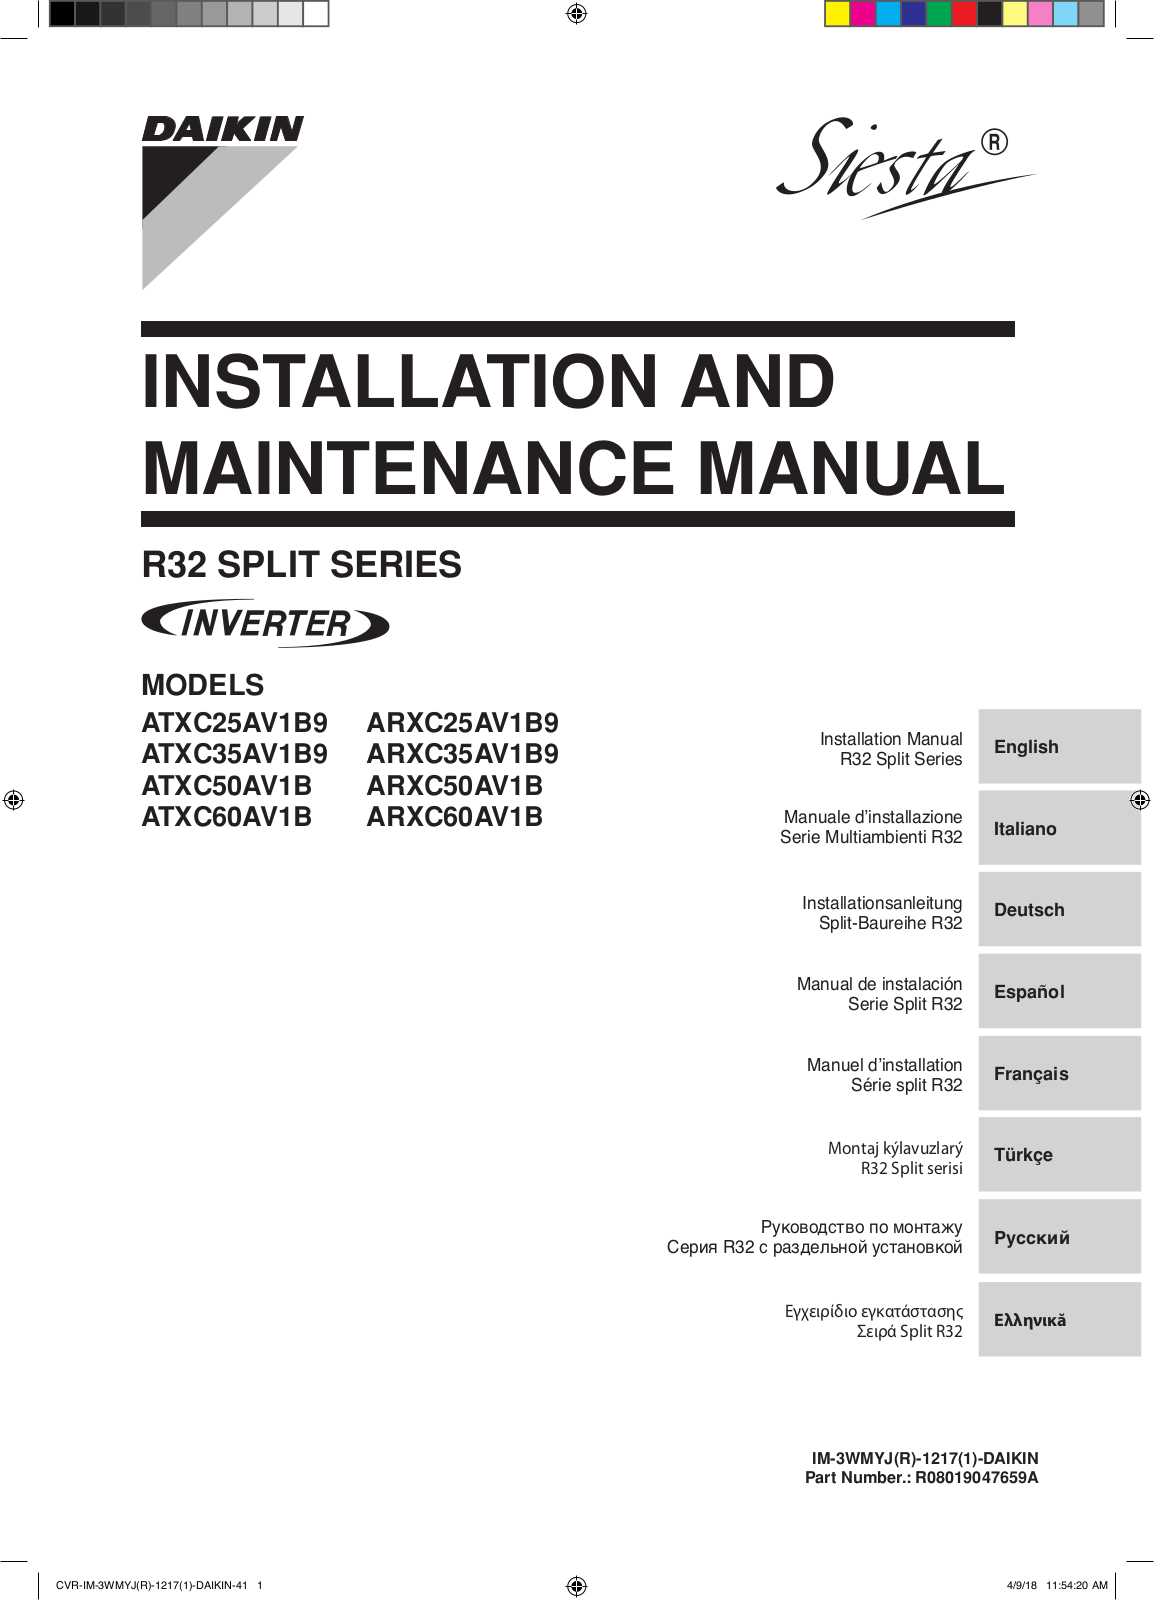 Daikin ATXC25AV1B9, ARXC25AV1B9, ATXC35AV1B9, ARXC35AV1B9, ATXC50AV1B Installation manuals